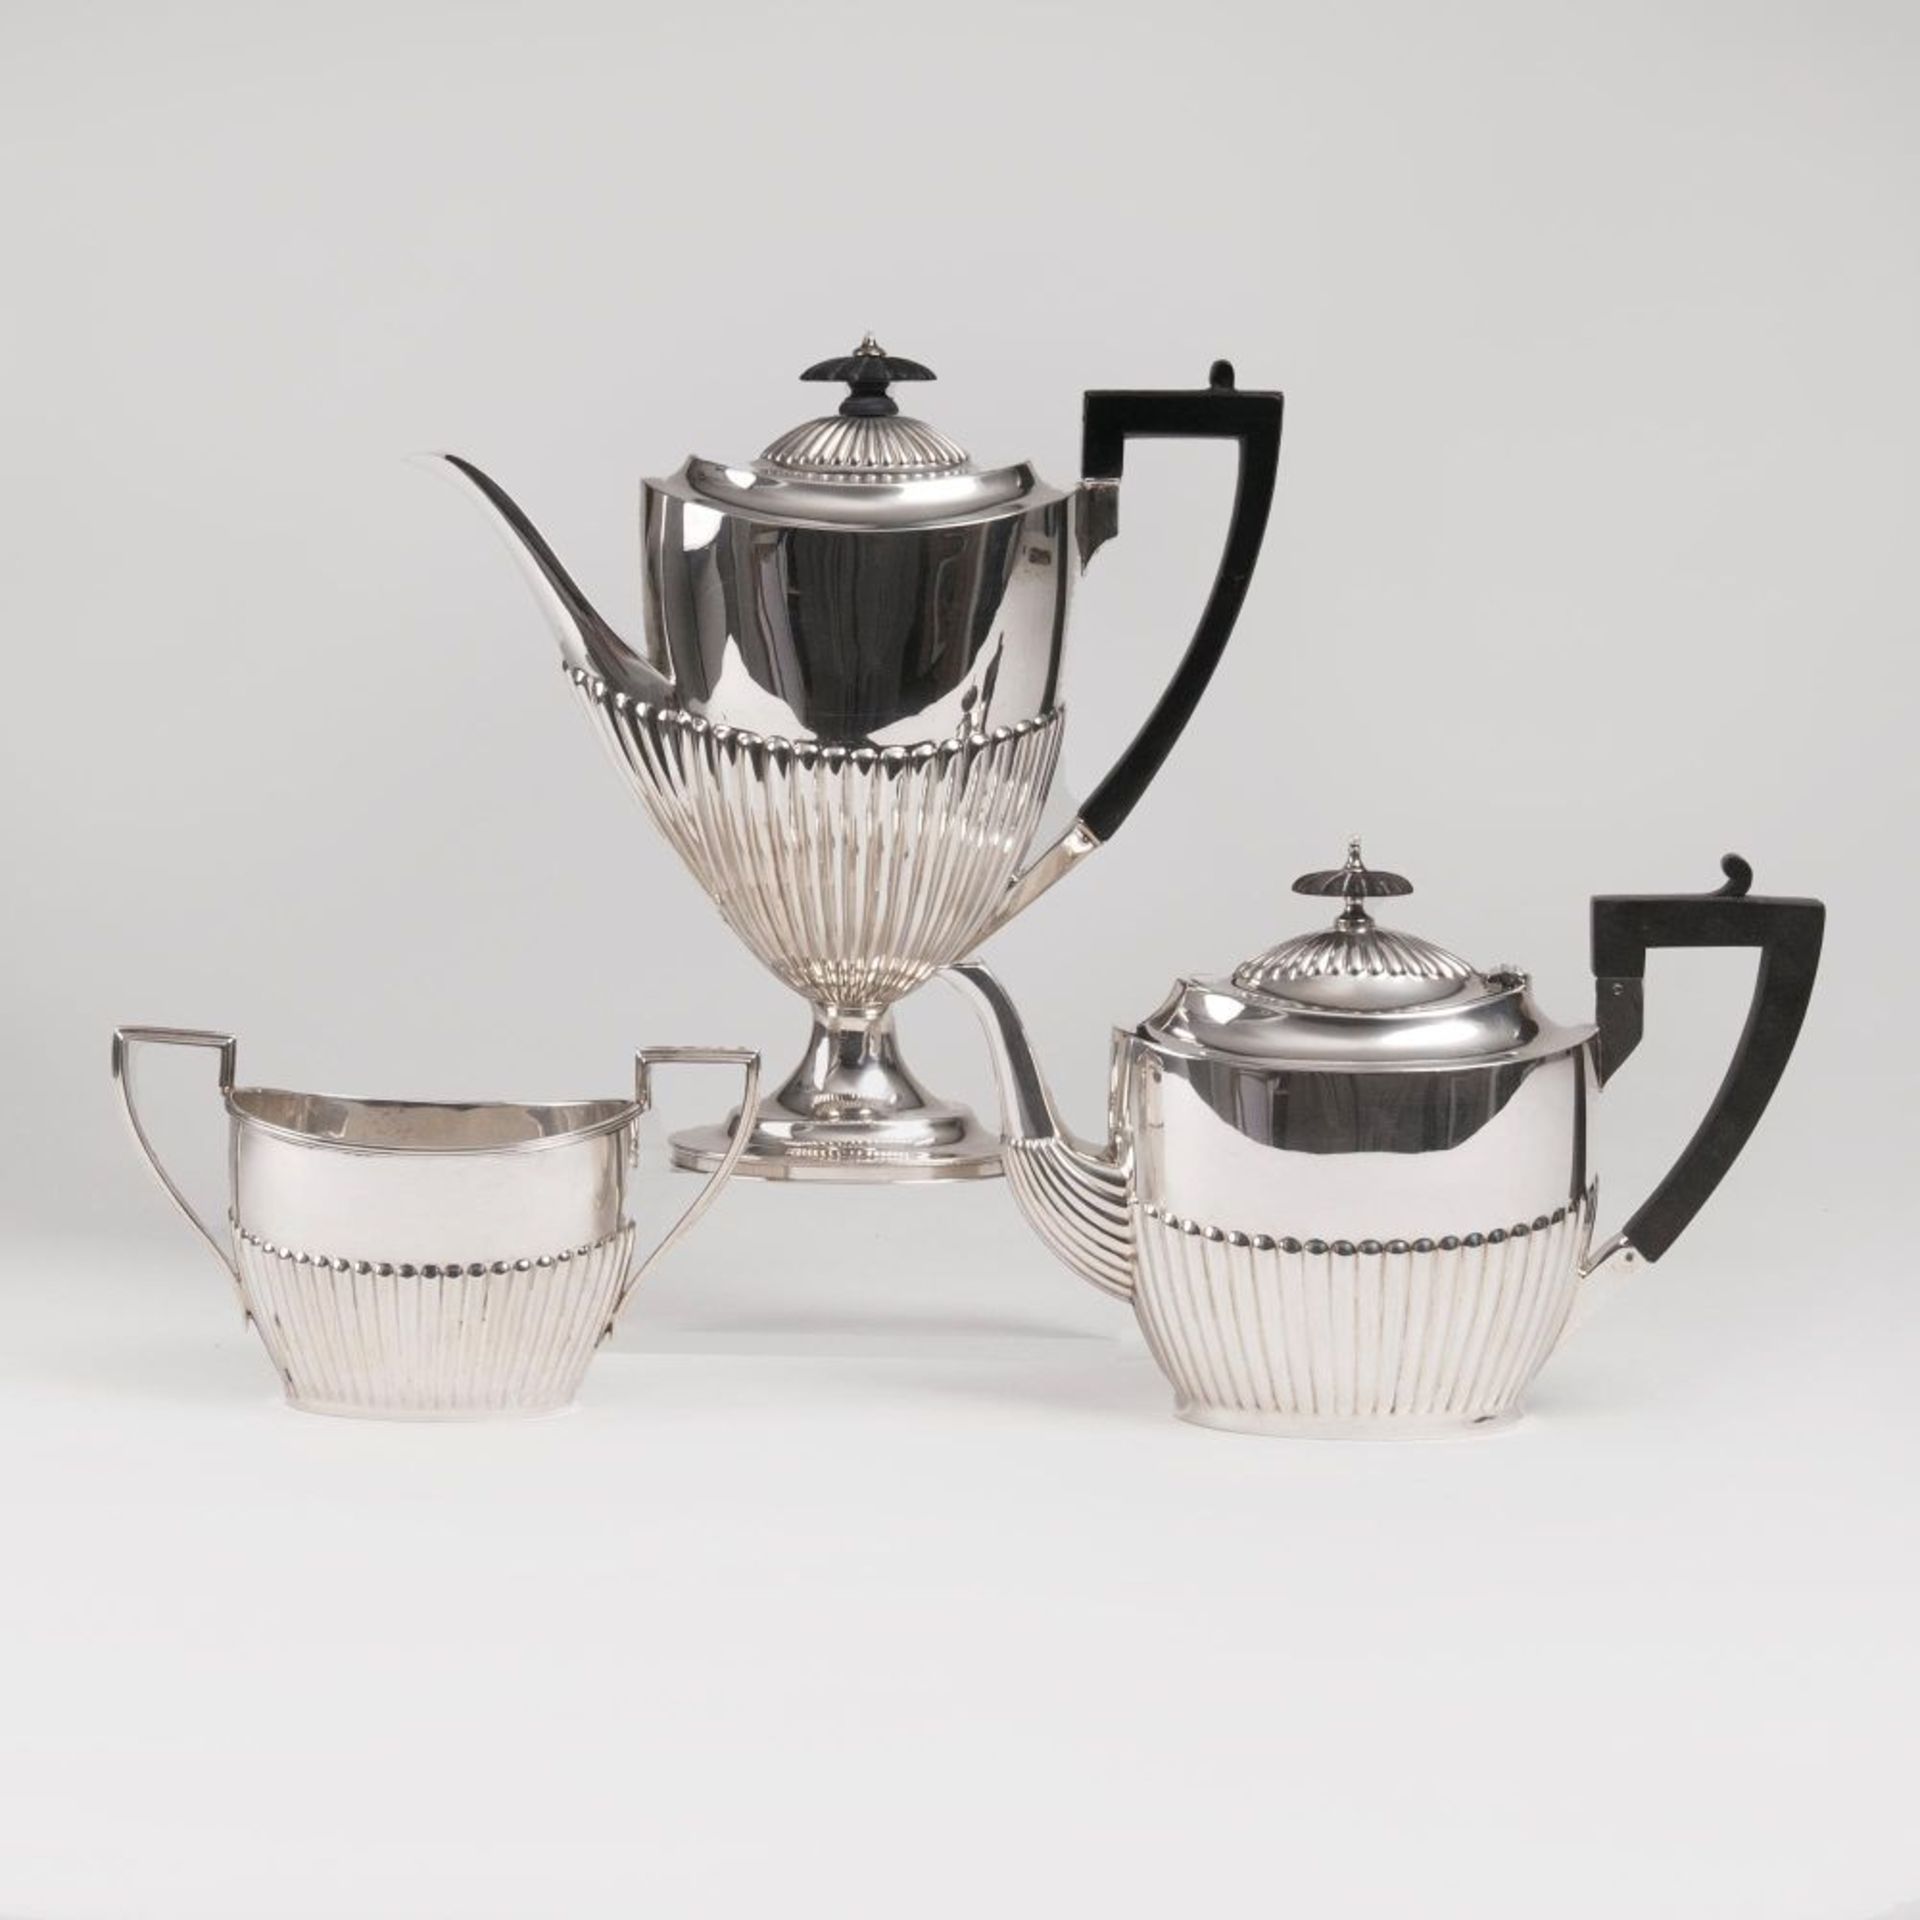 Viktorianische Kaffee- und Teekanne mit Zuckerpot.